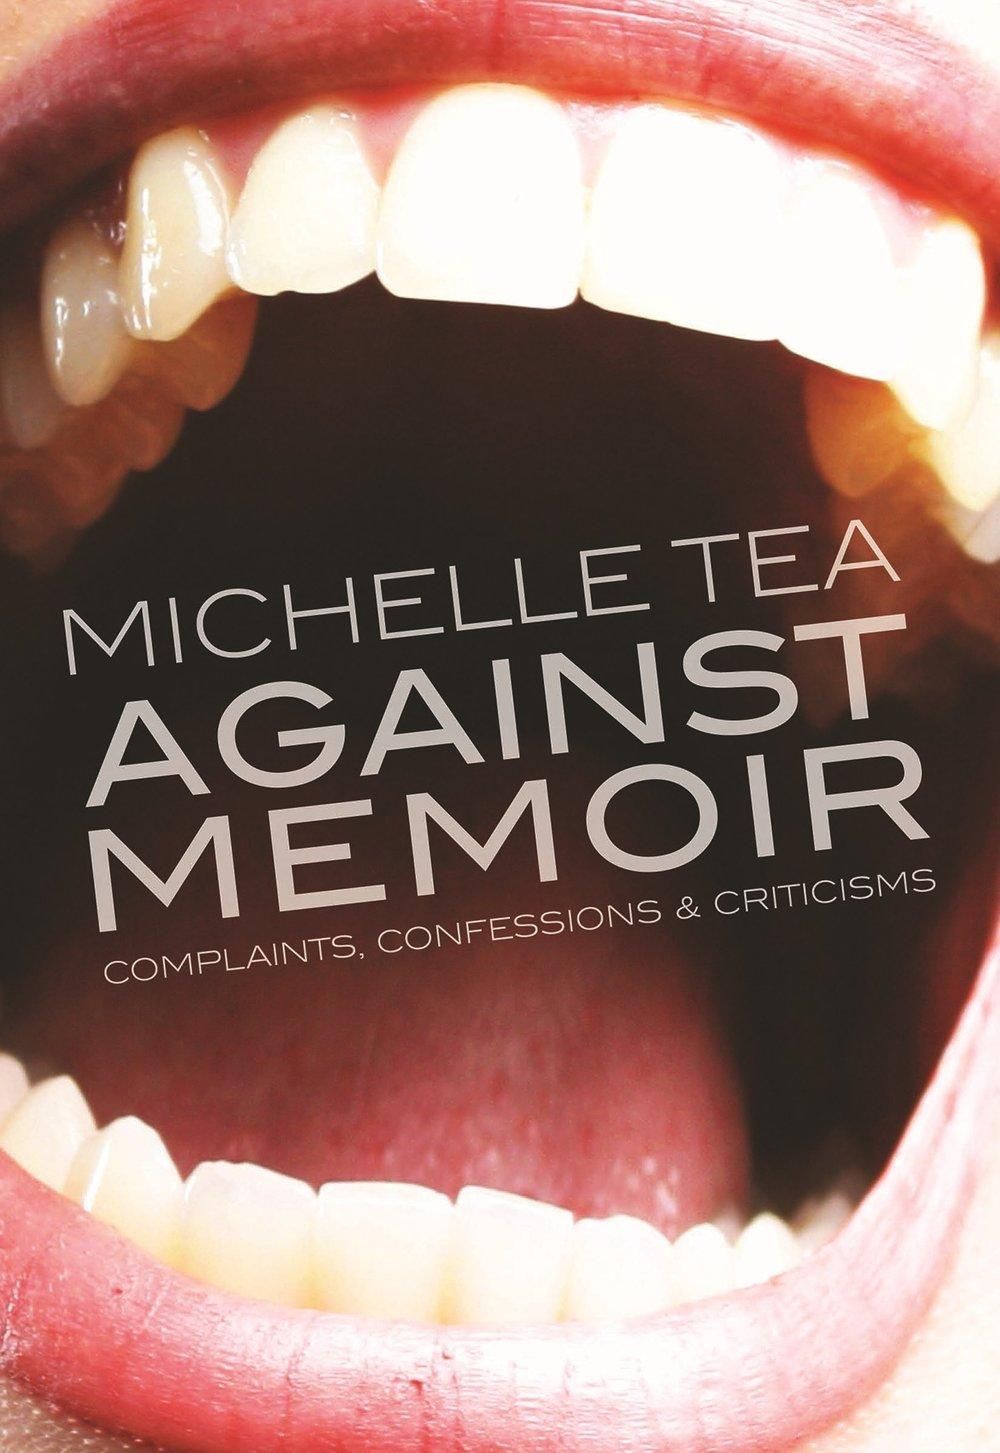 6. Against Memoir by Michelle Tea